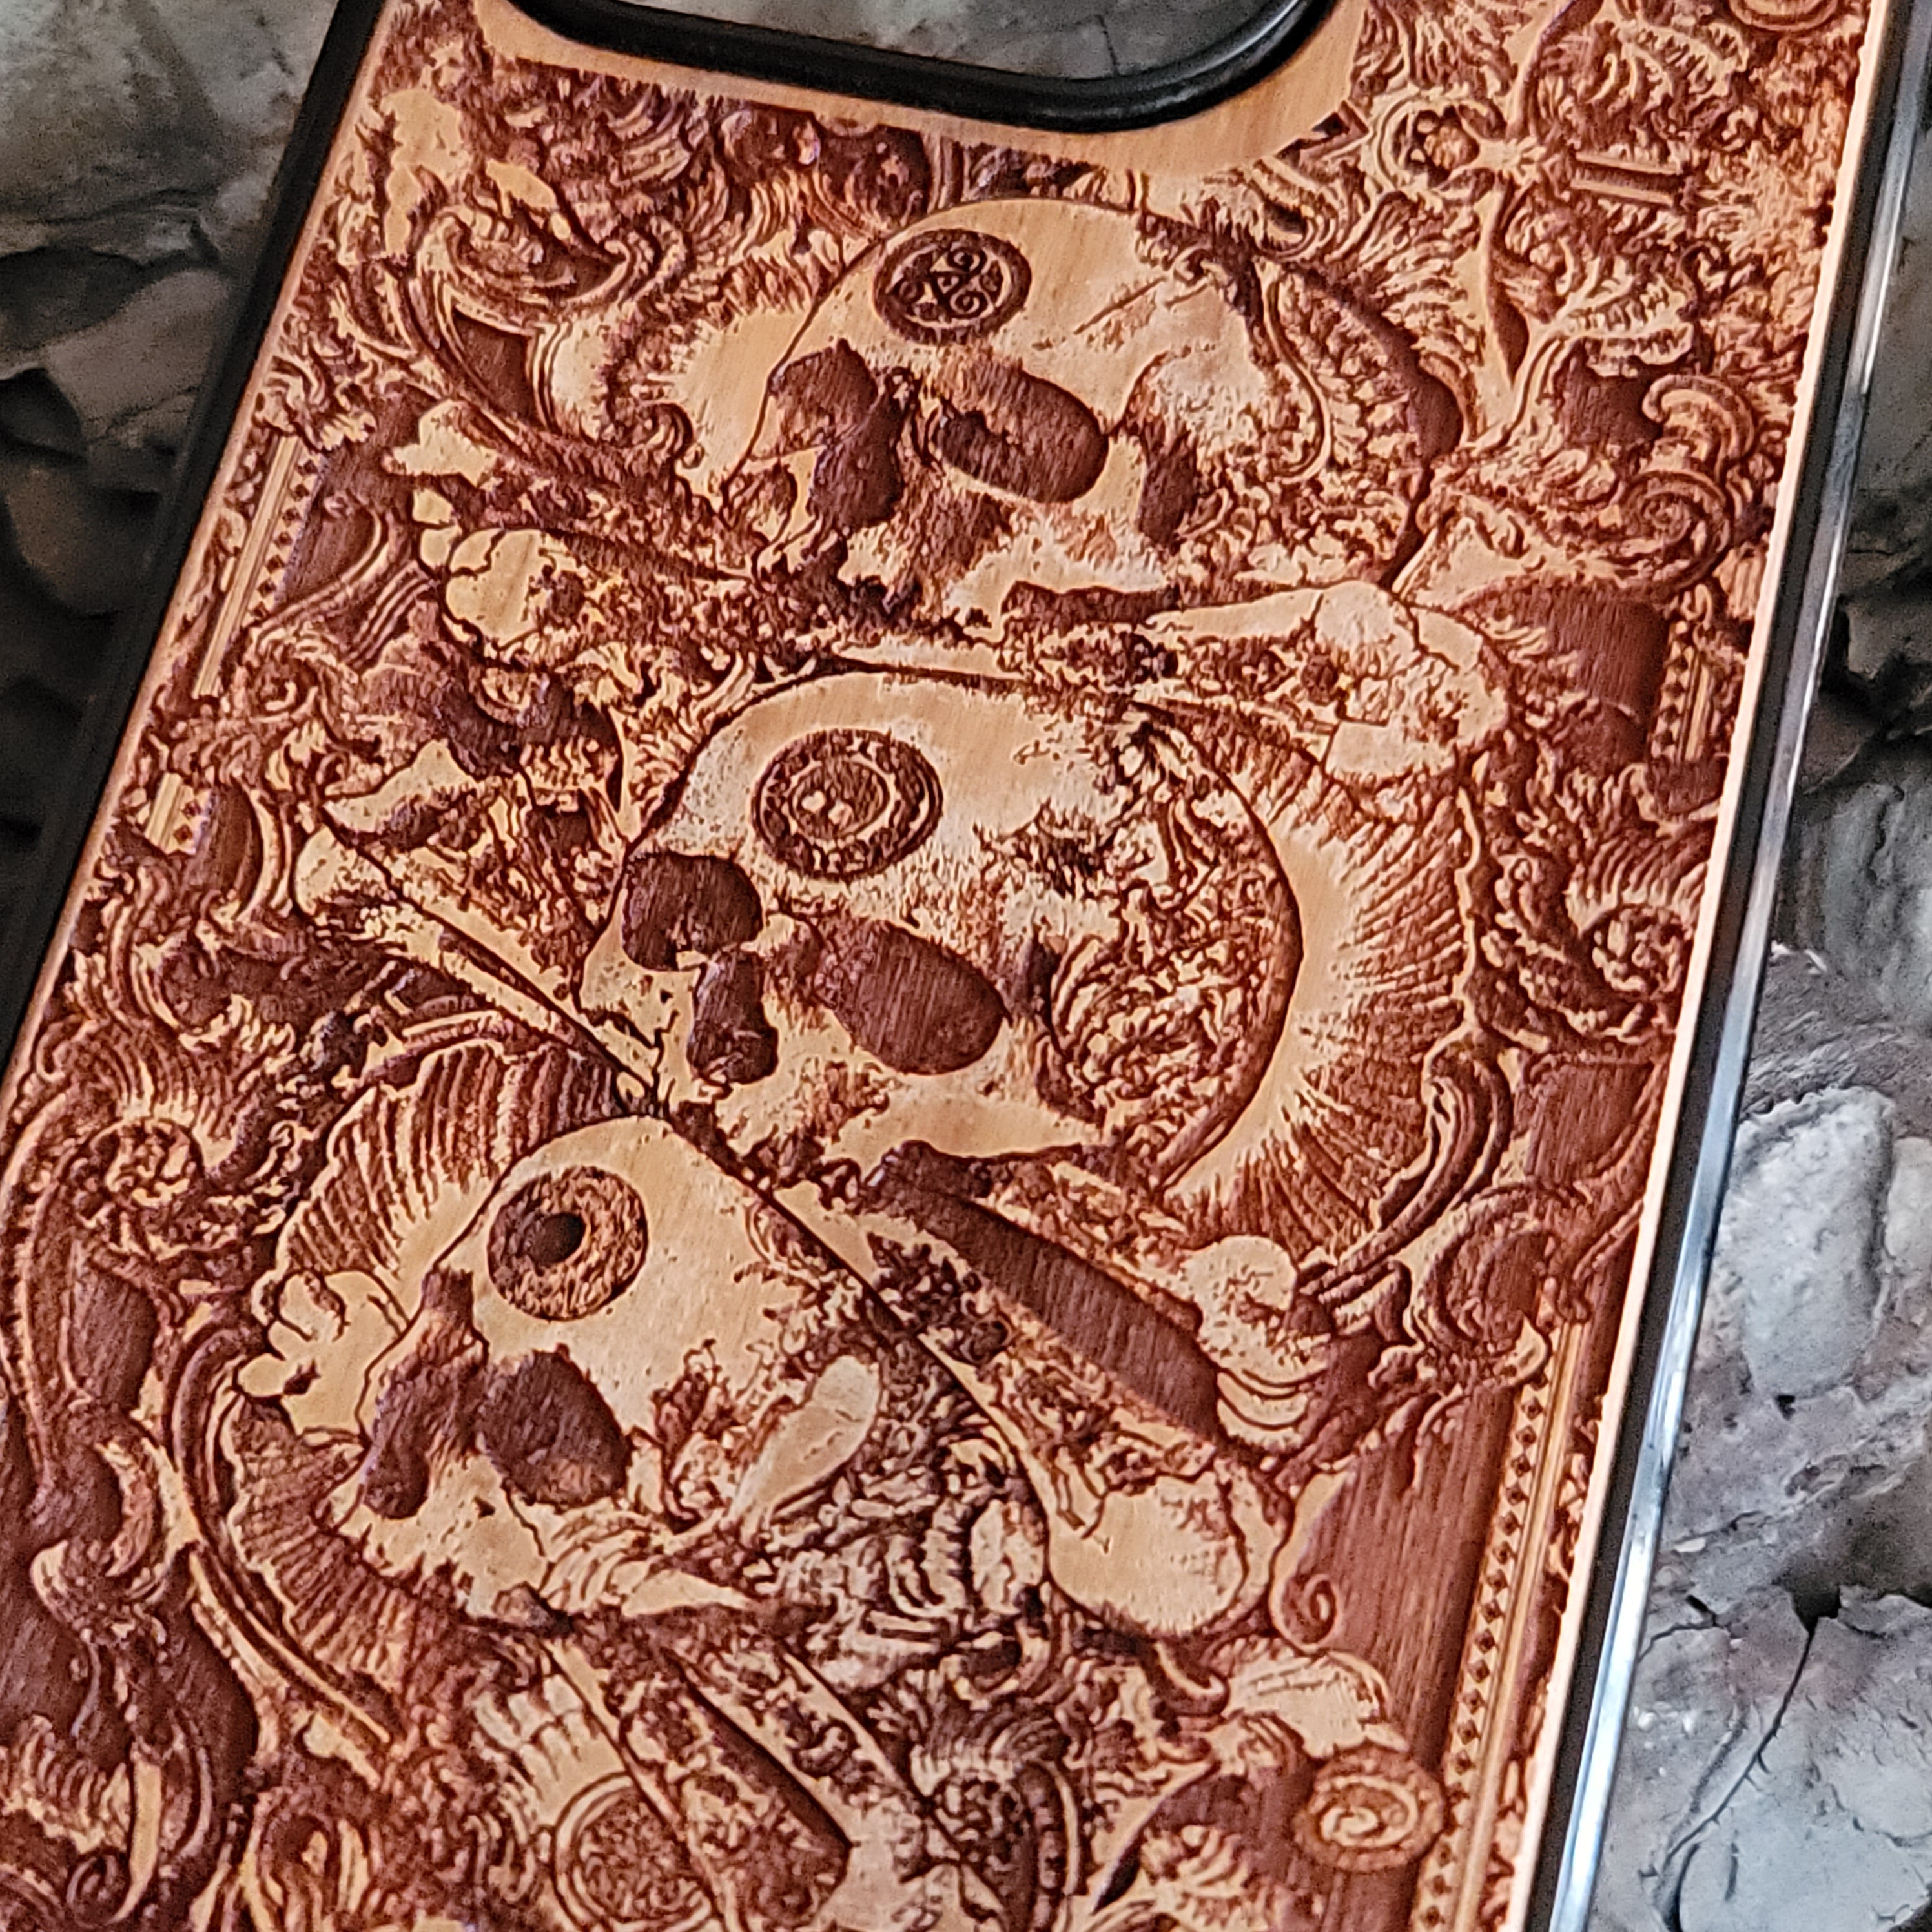 iPhone & Samsung Galaxy Wood Phone Case - Skeleton Artwork "Trophies"